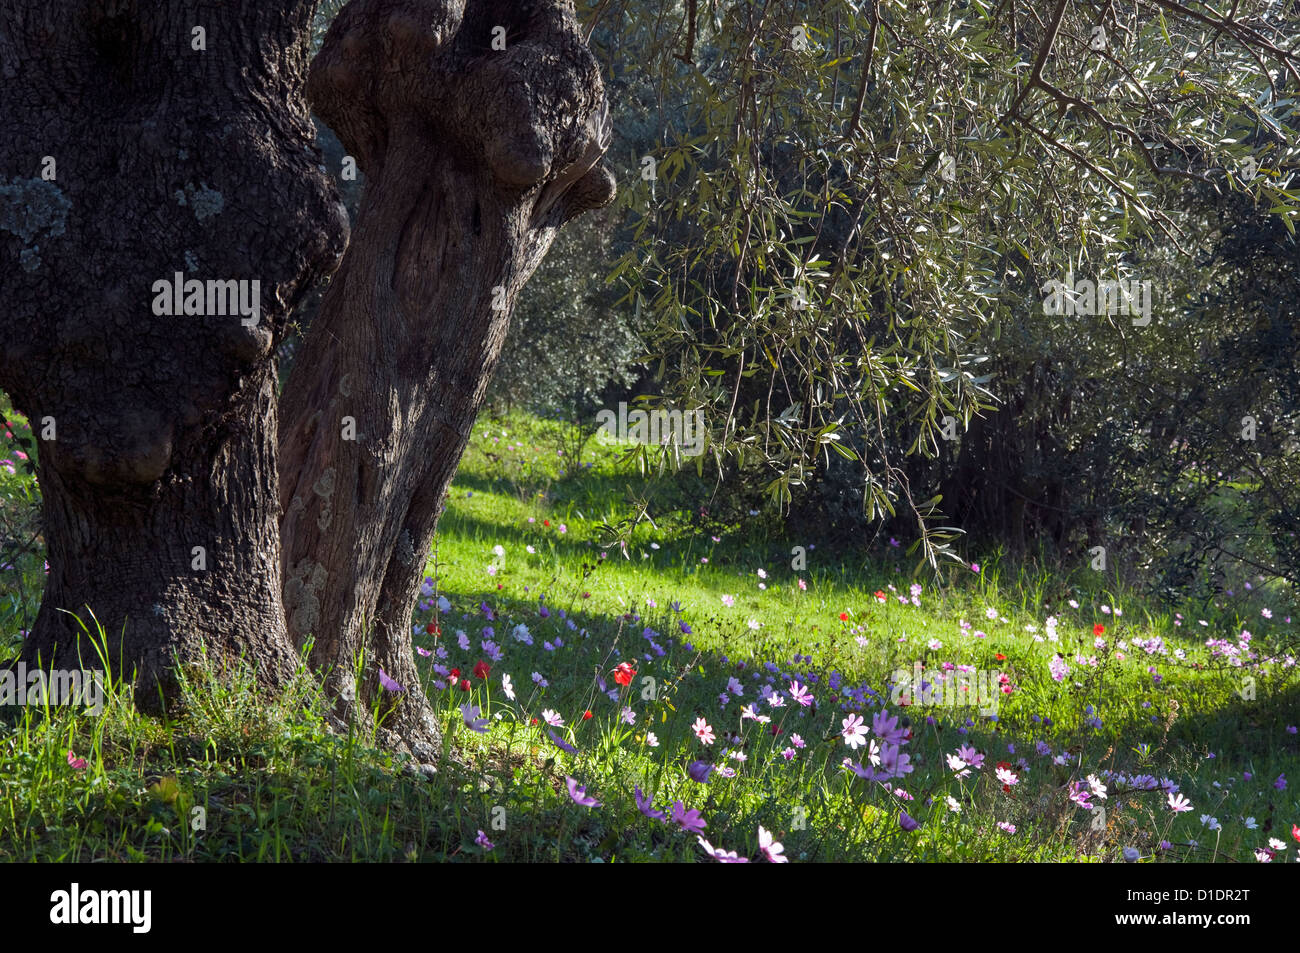 Poppy Anemones (Anemone coronaria) under olive tree Stock Photo